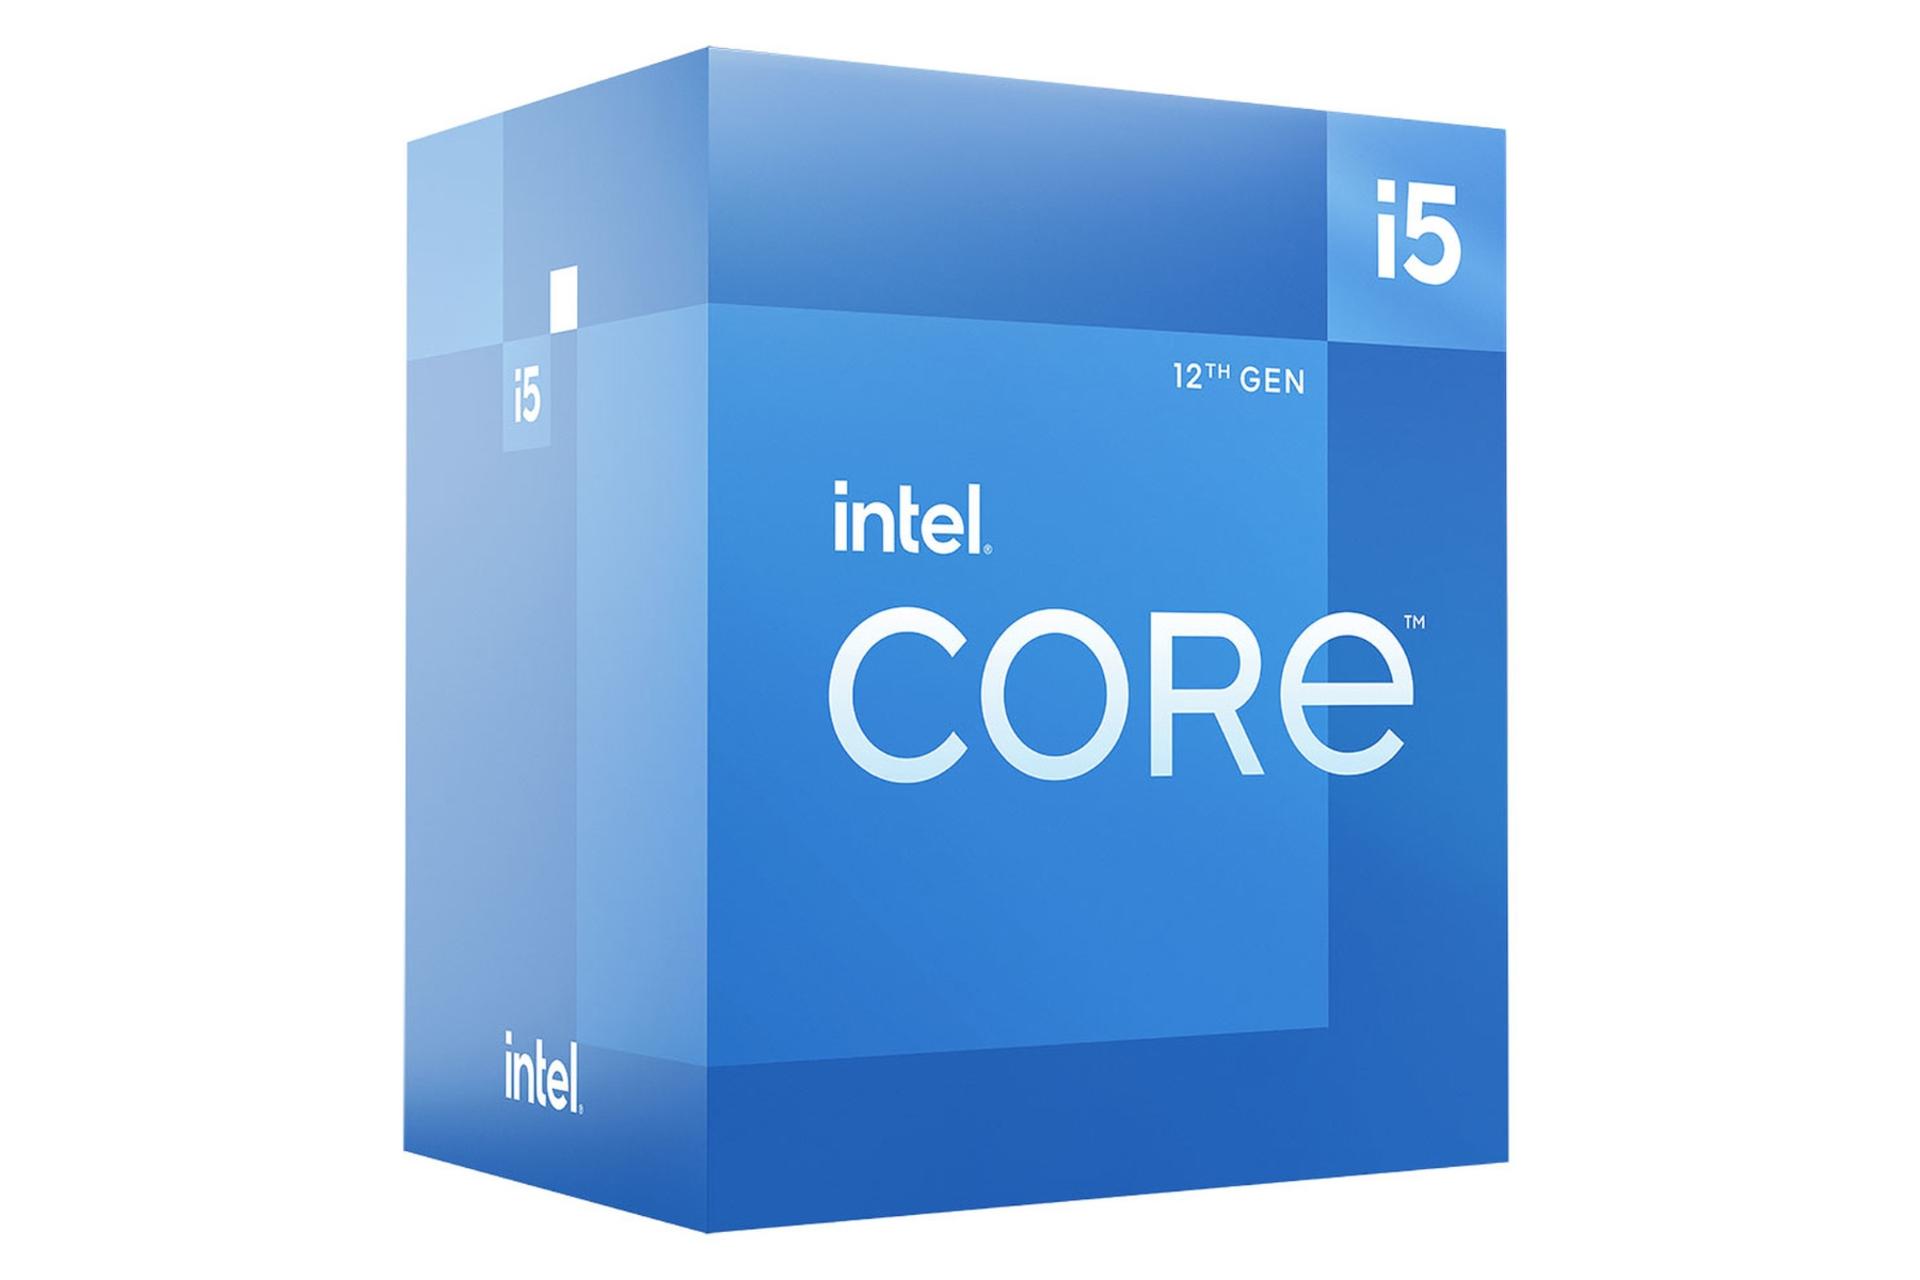 نمای چپ جعبه پردازنده اینتل Core i5 نسل دوازدهم / Intel Core i5 12th Gen